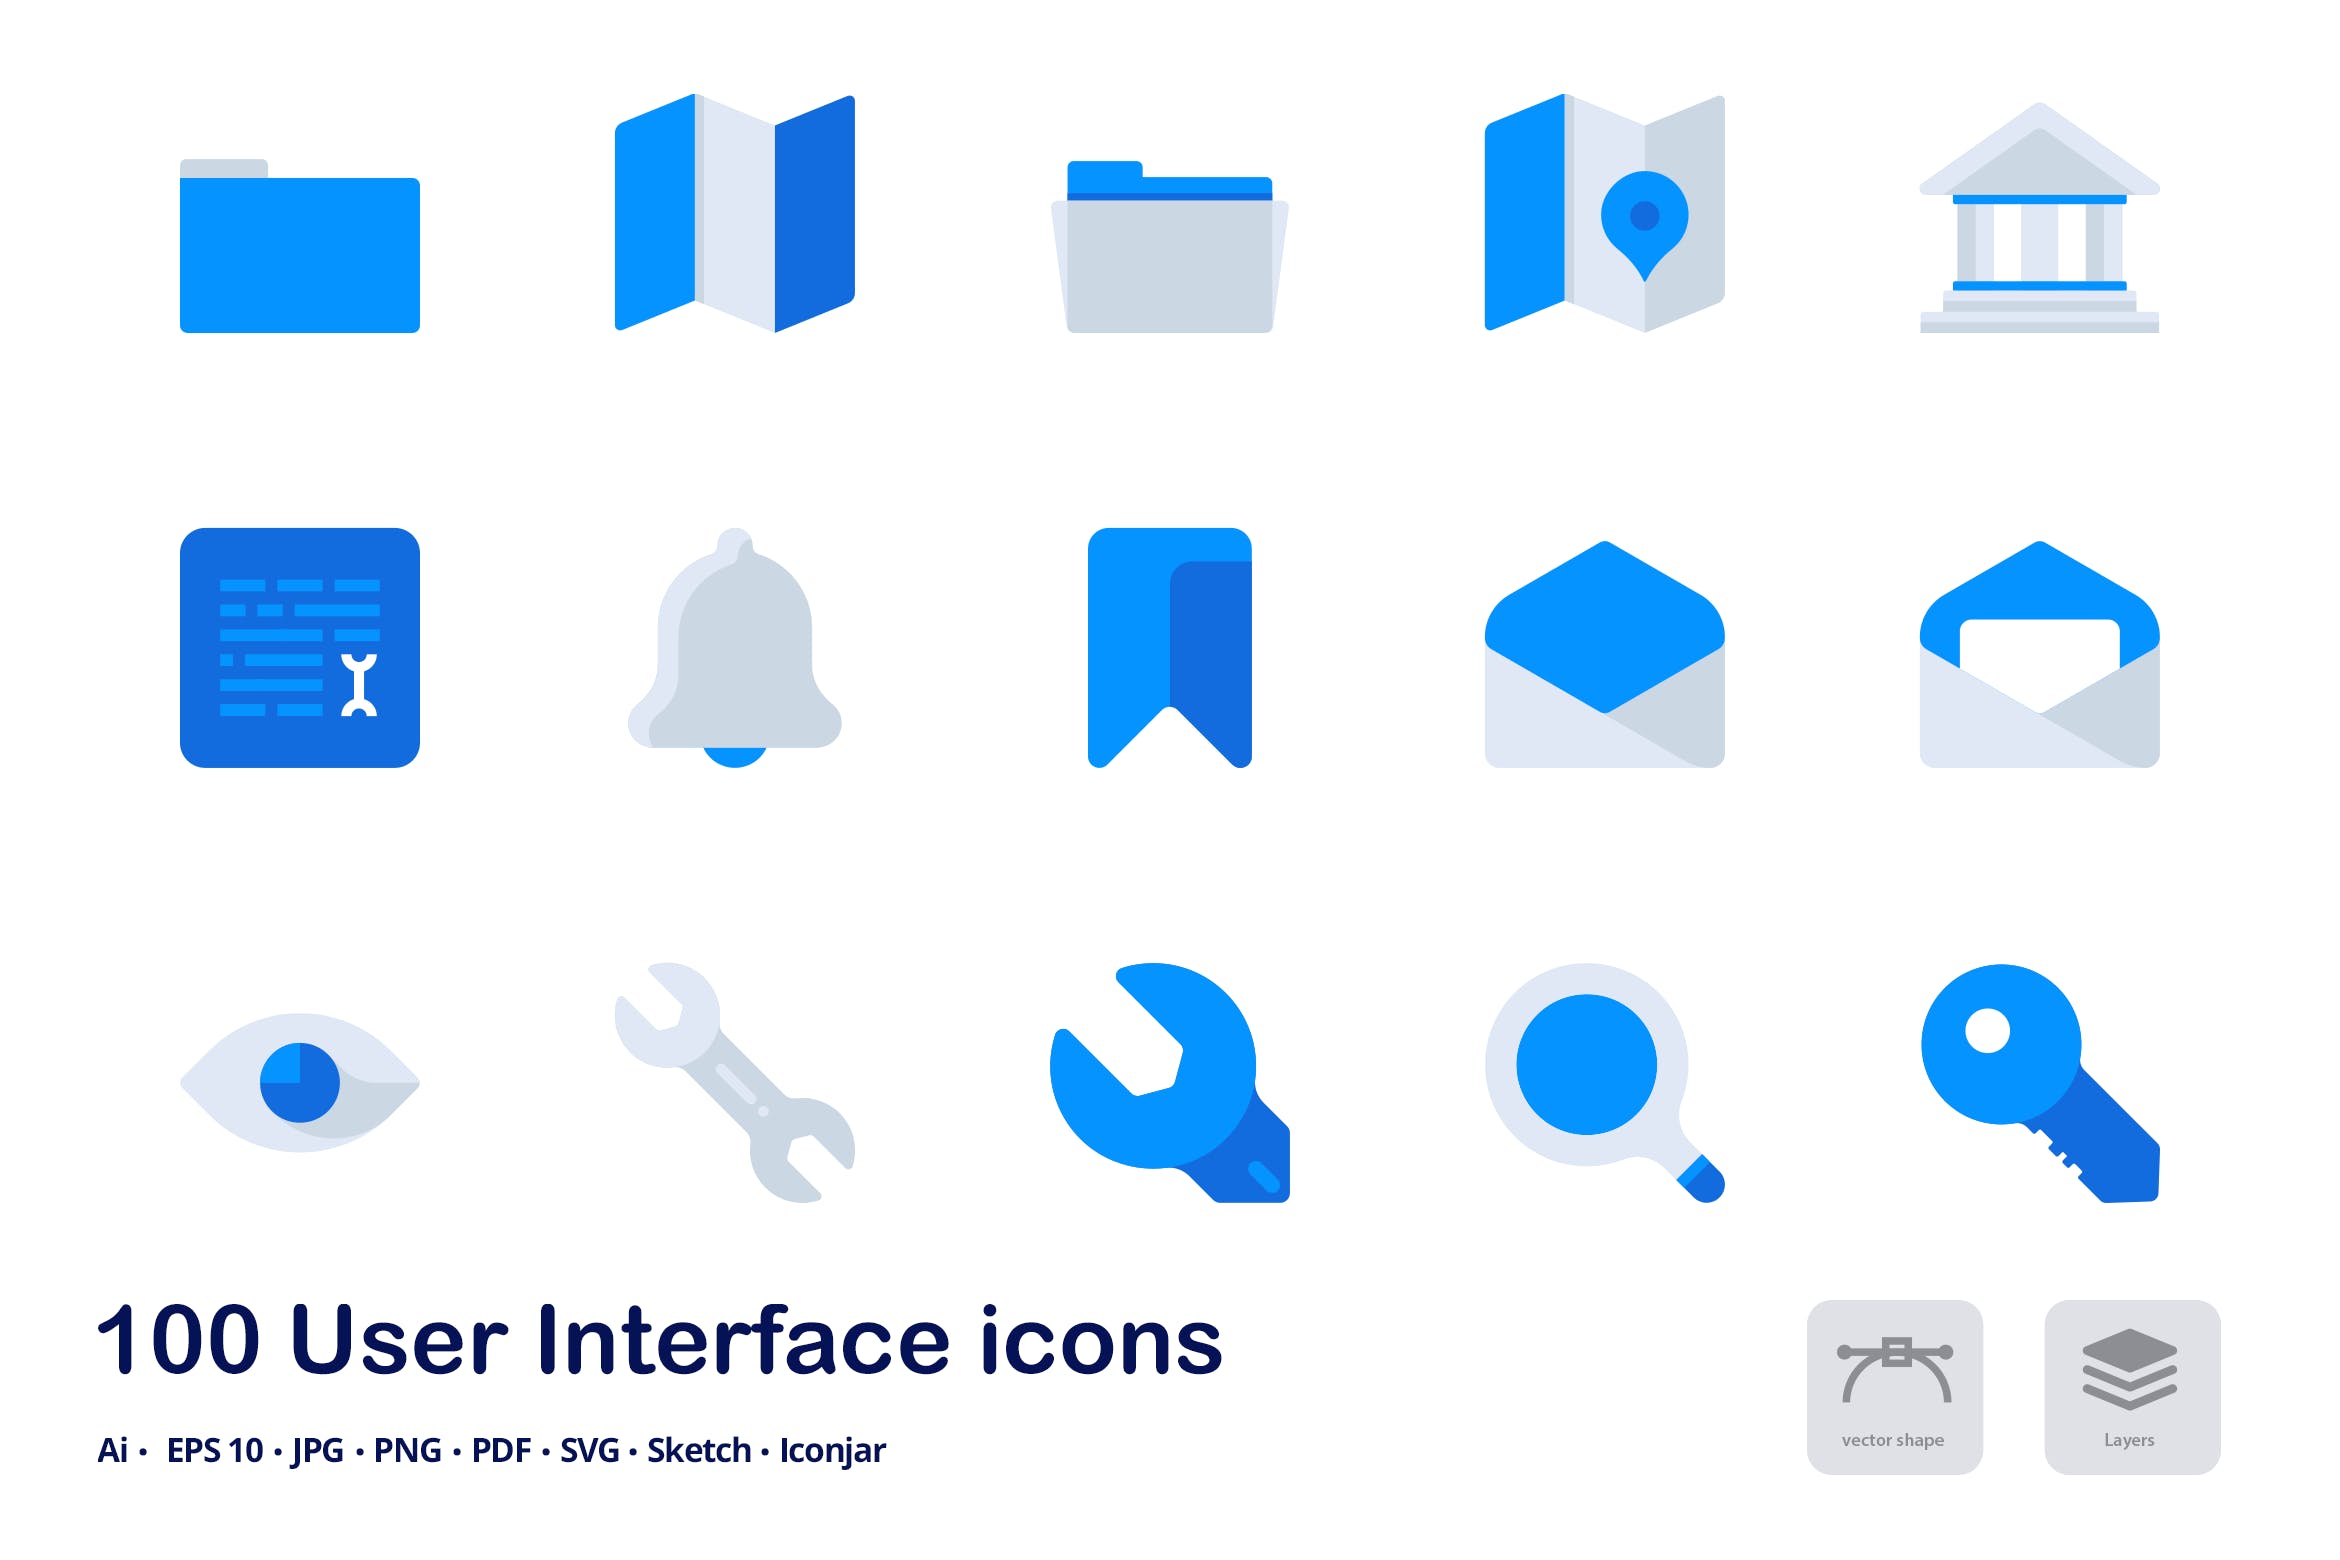 100枚用户界面设计双色调扁平化图标素材 User Interface Accent Duo Tone Flat Icons插图